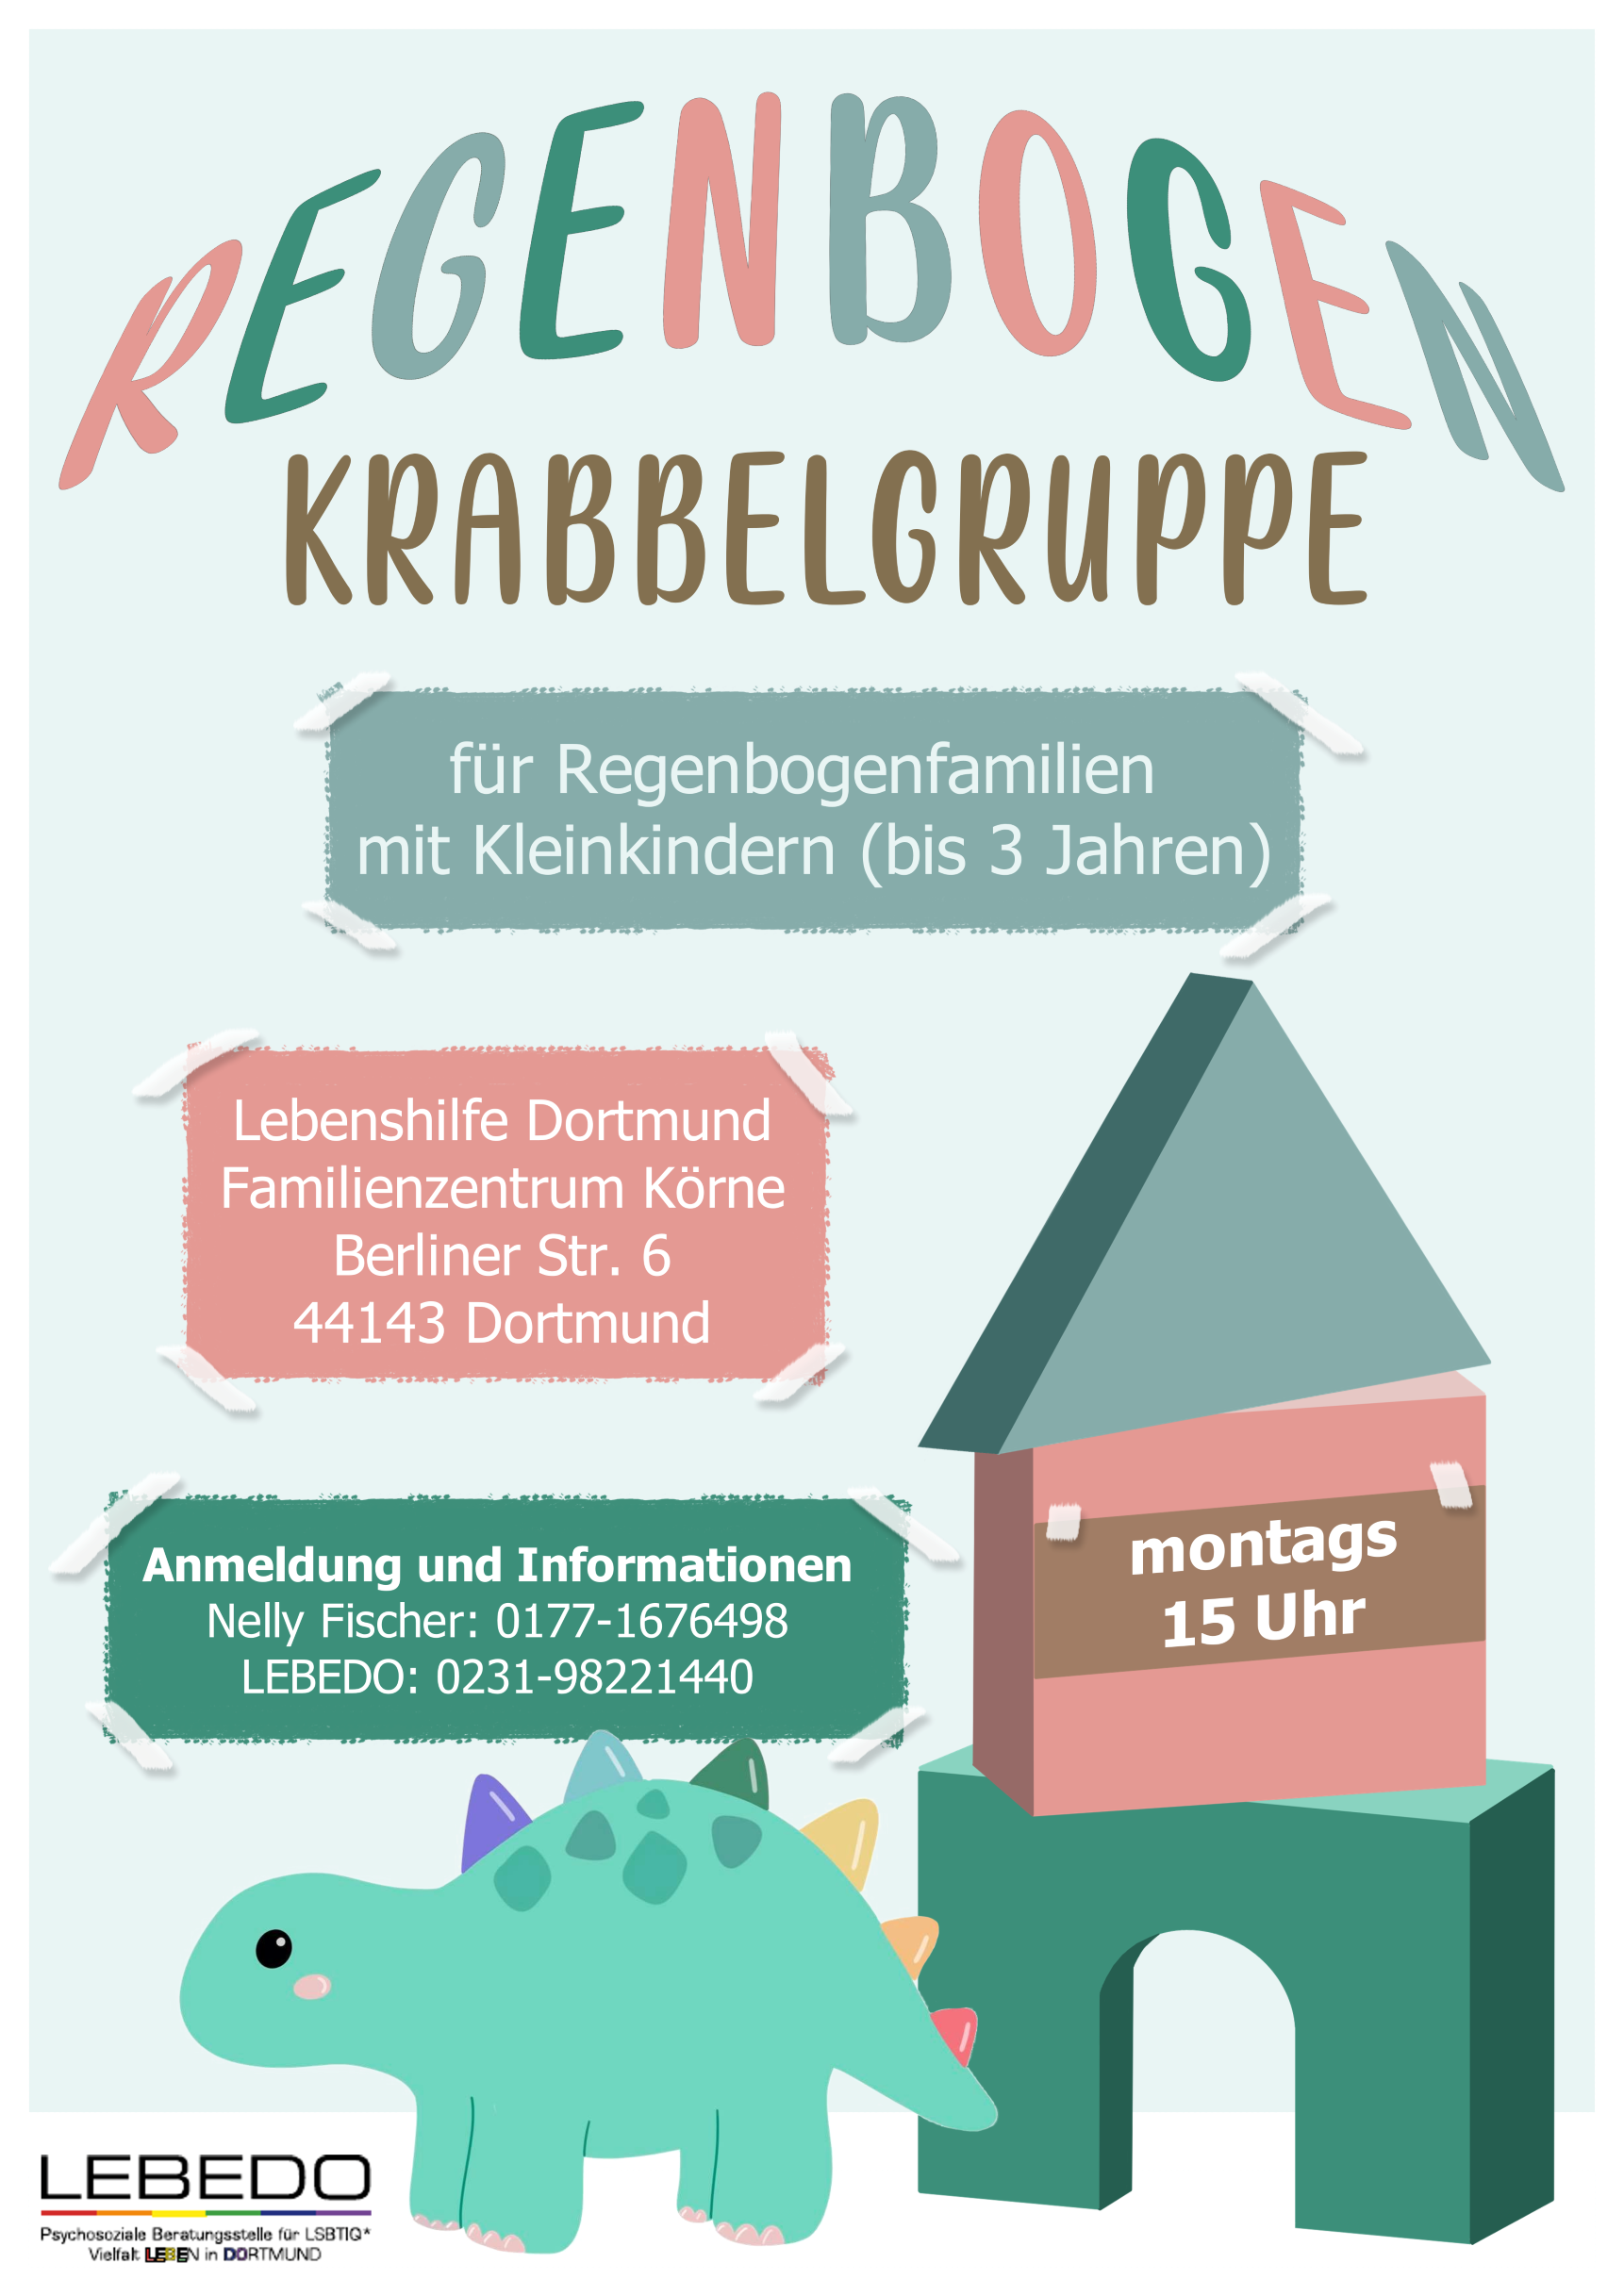 Regenbogen_Krabbelgruppe_RDY2_1.png